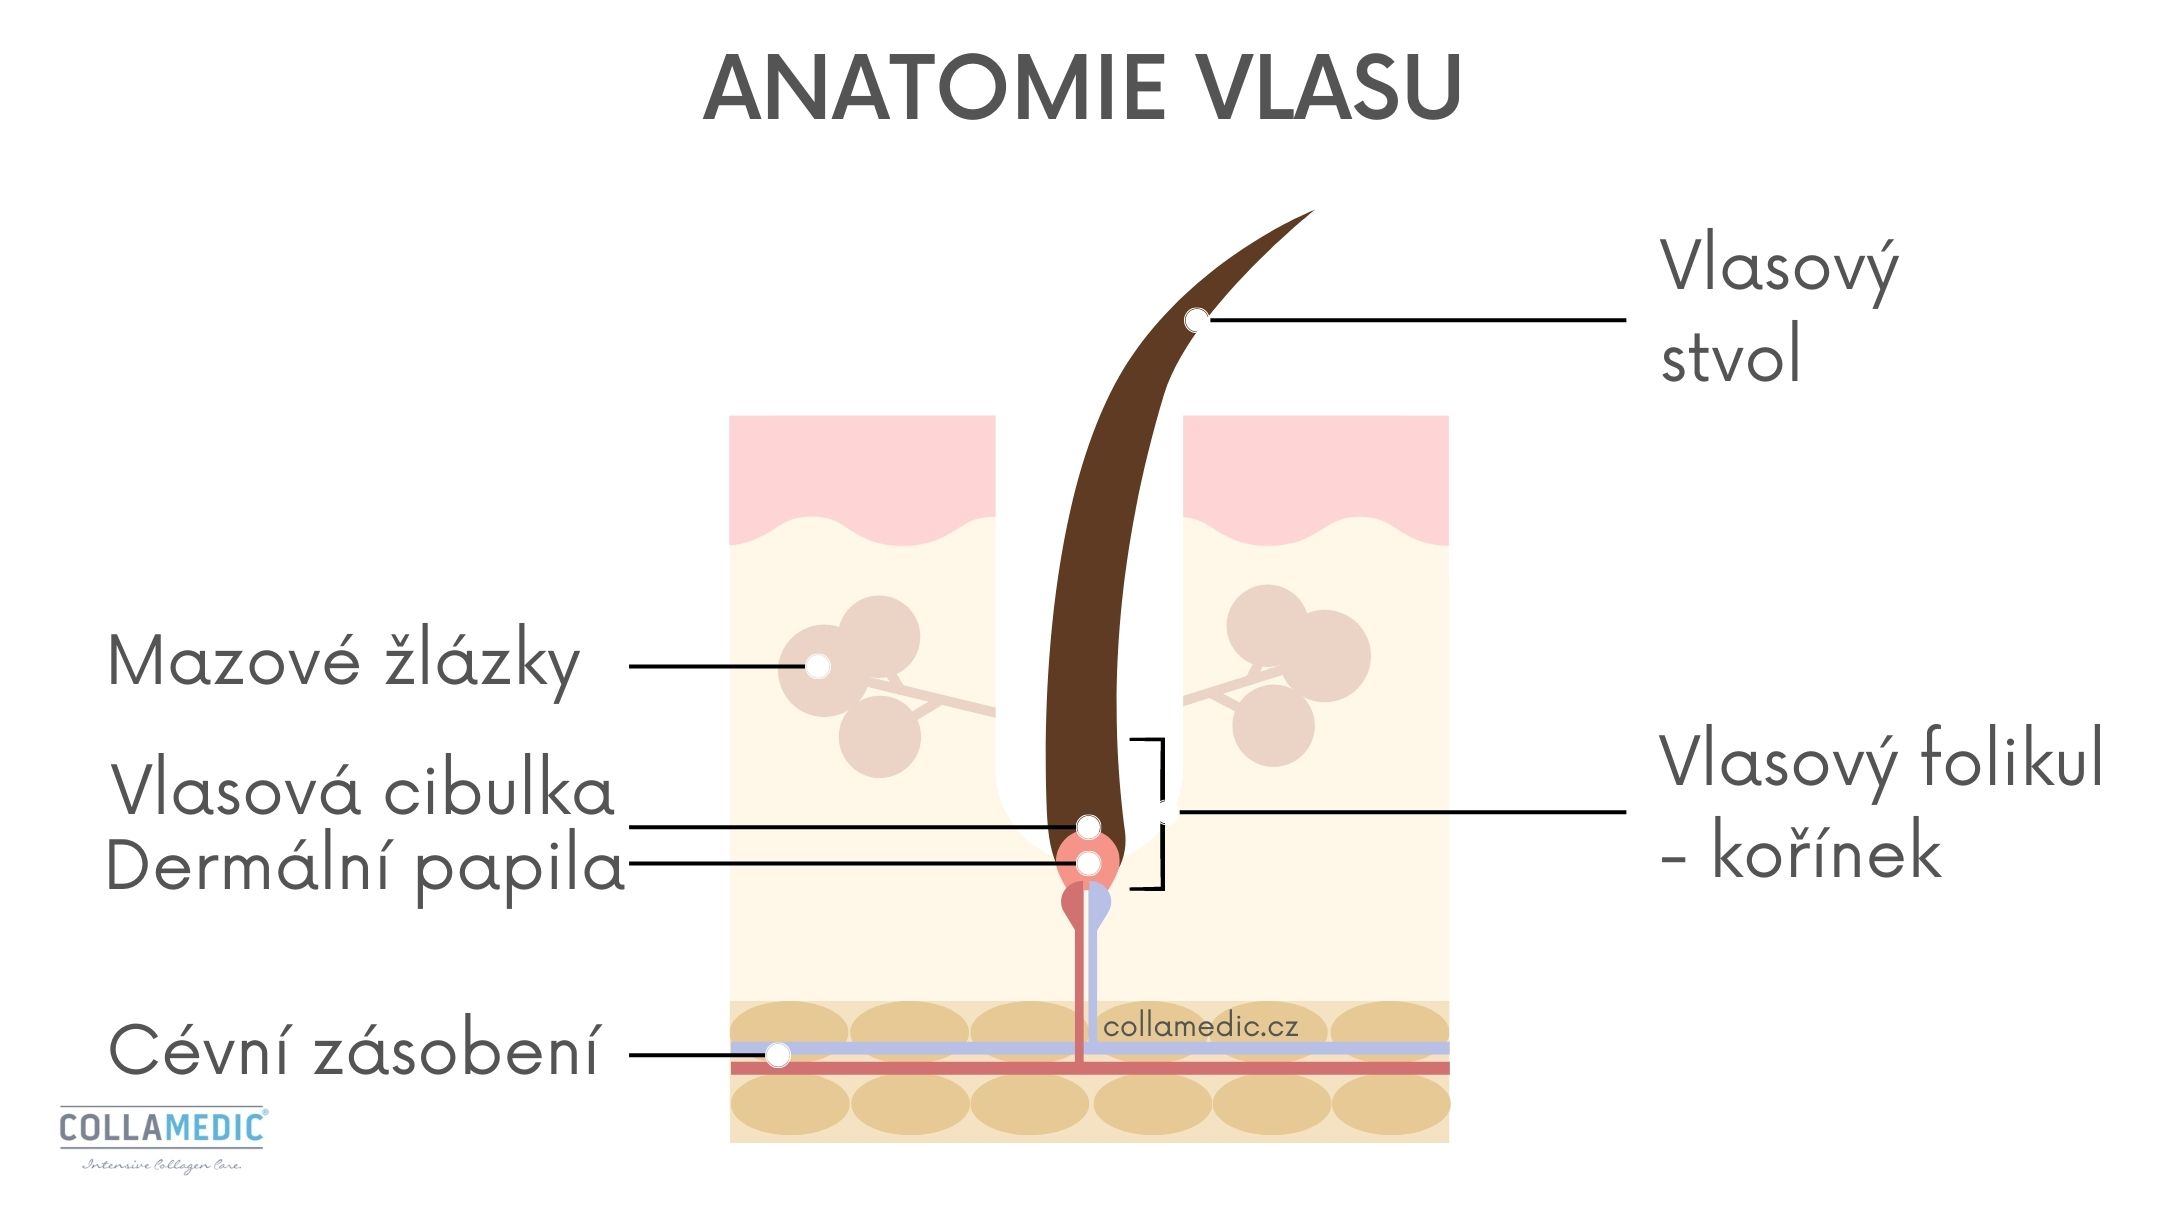 Anatomie vlasu, struktura vlasu